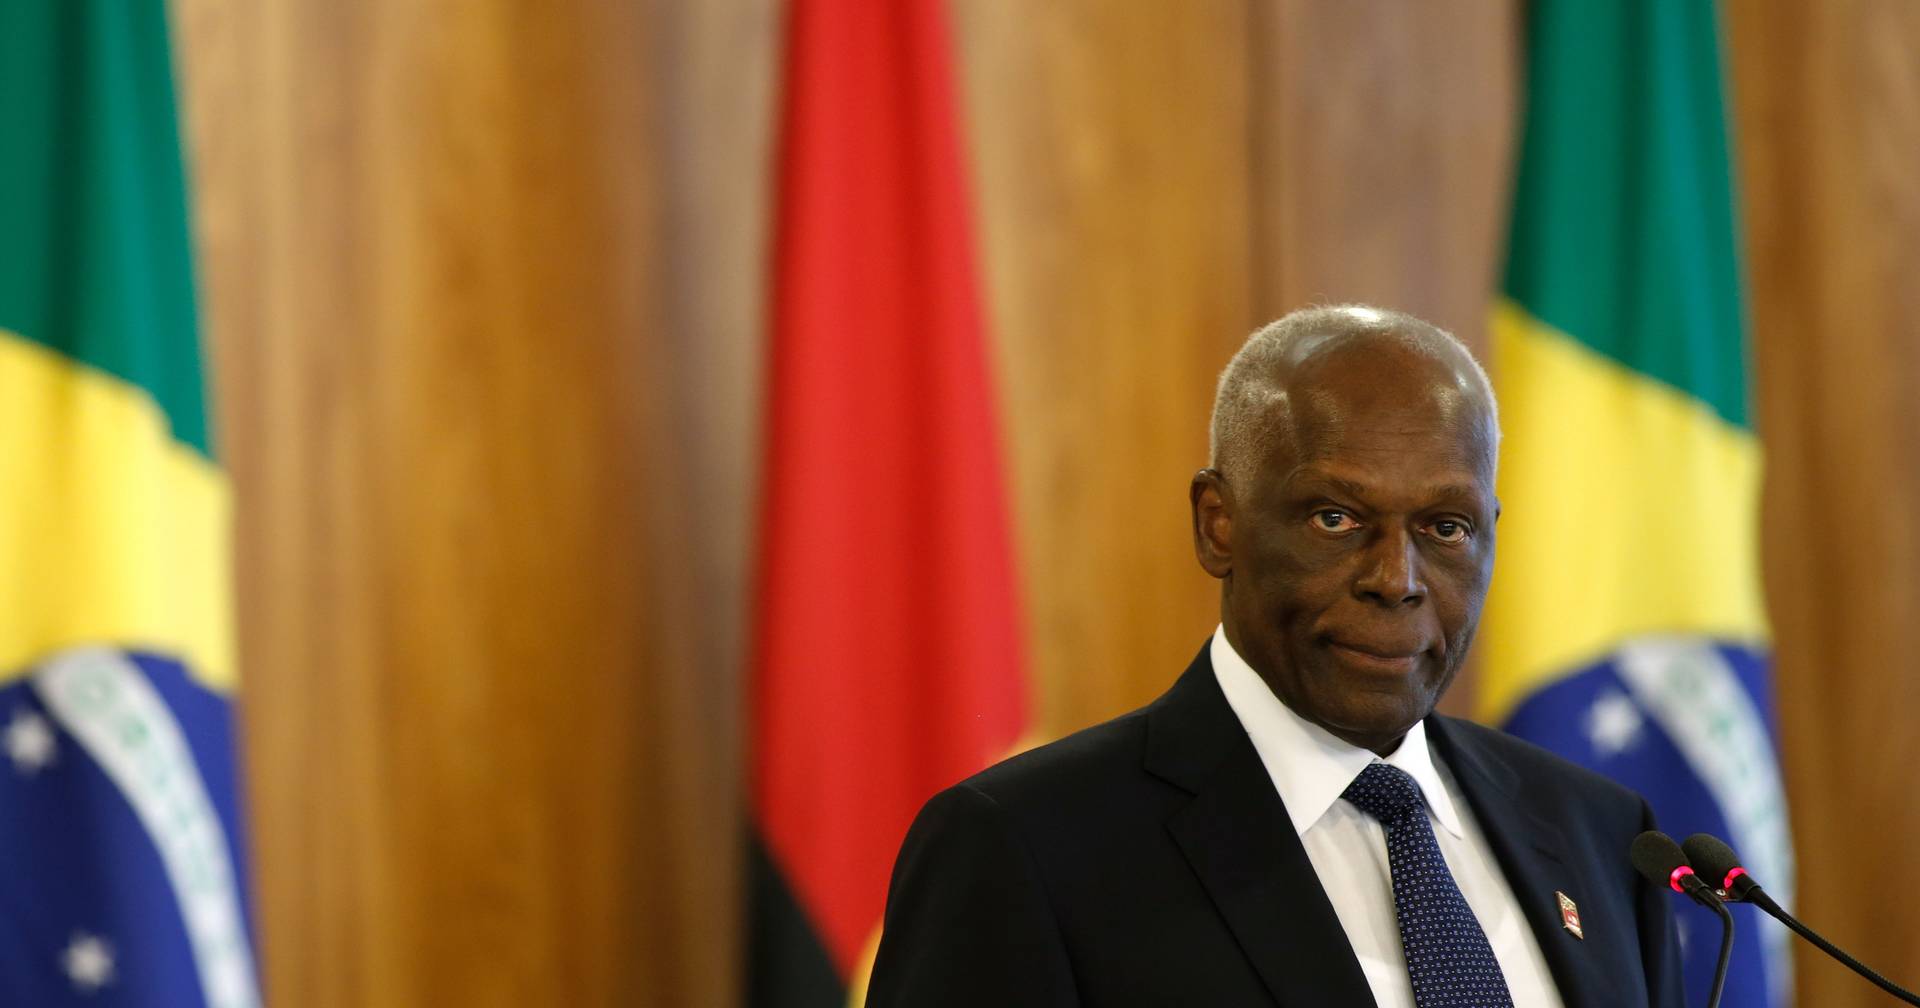 Fallece José Eduardo dos Santos, expresidente de Angola